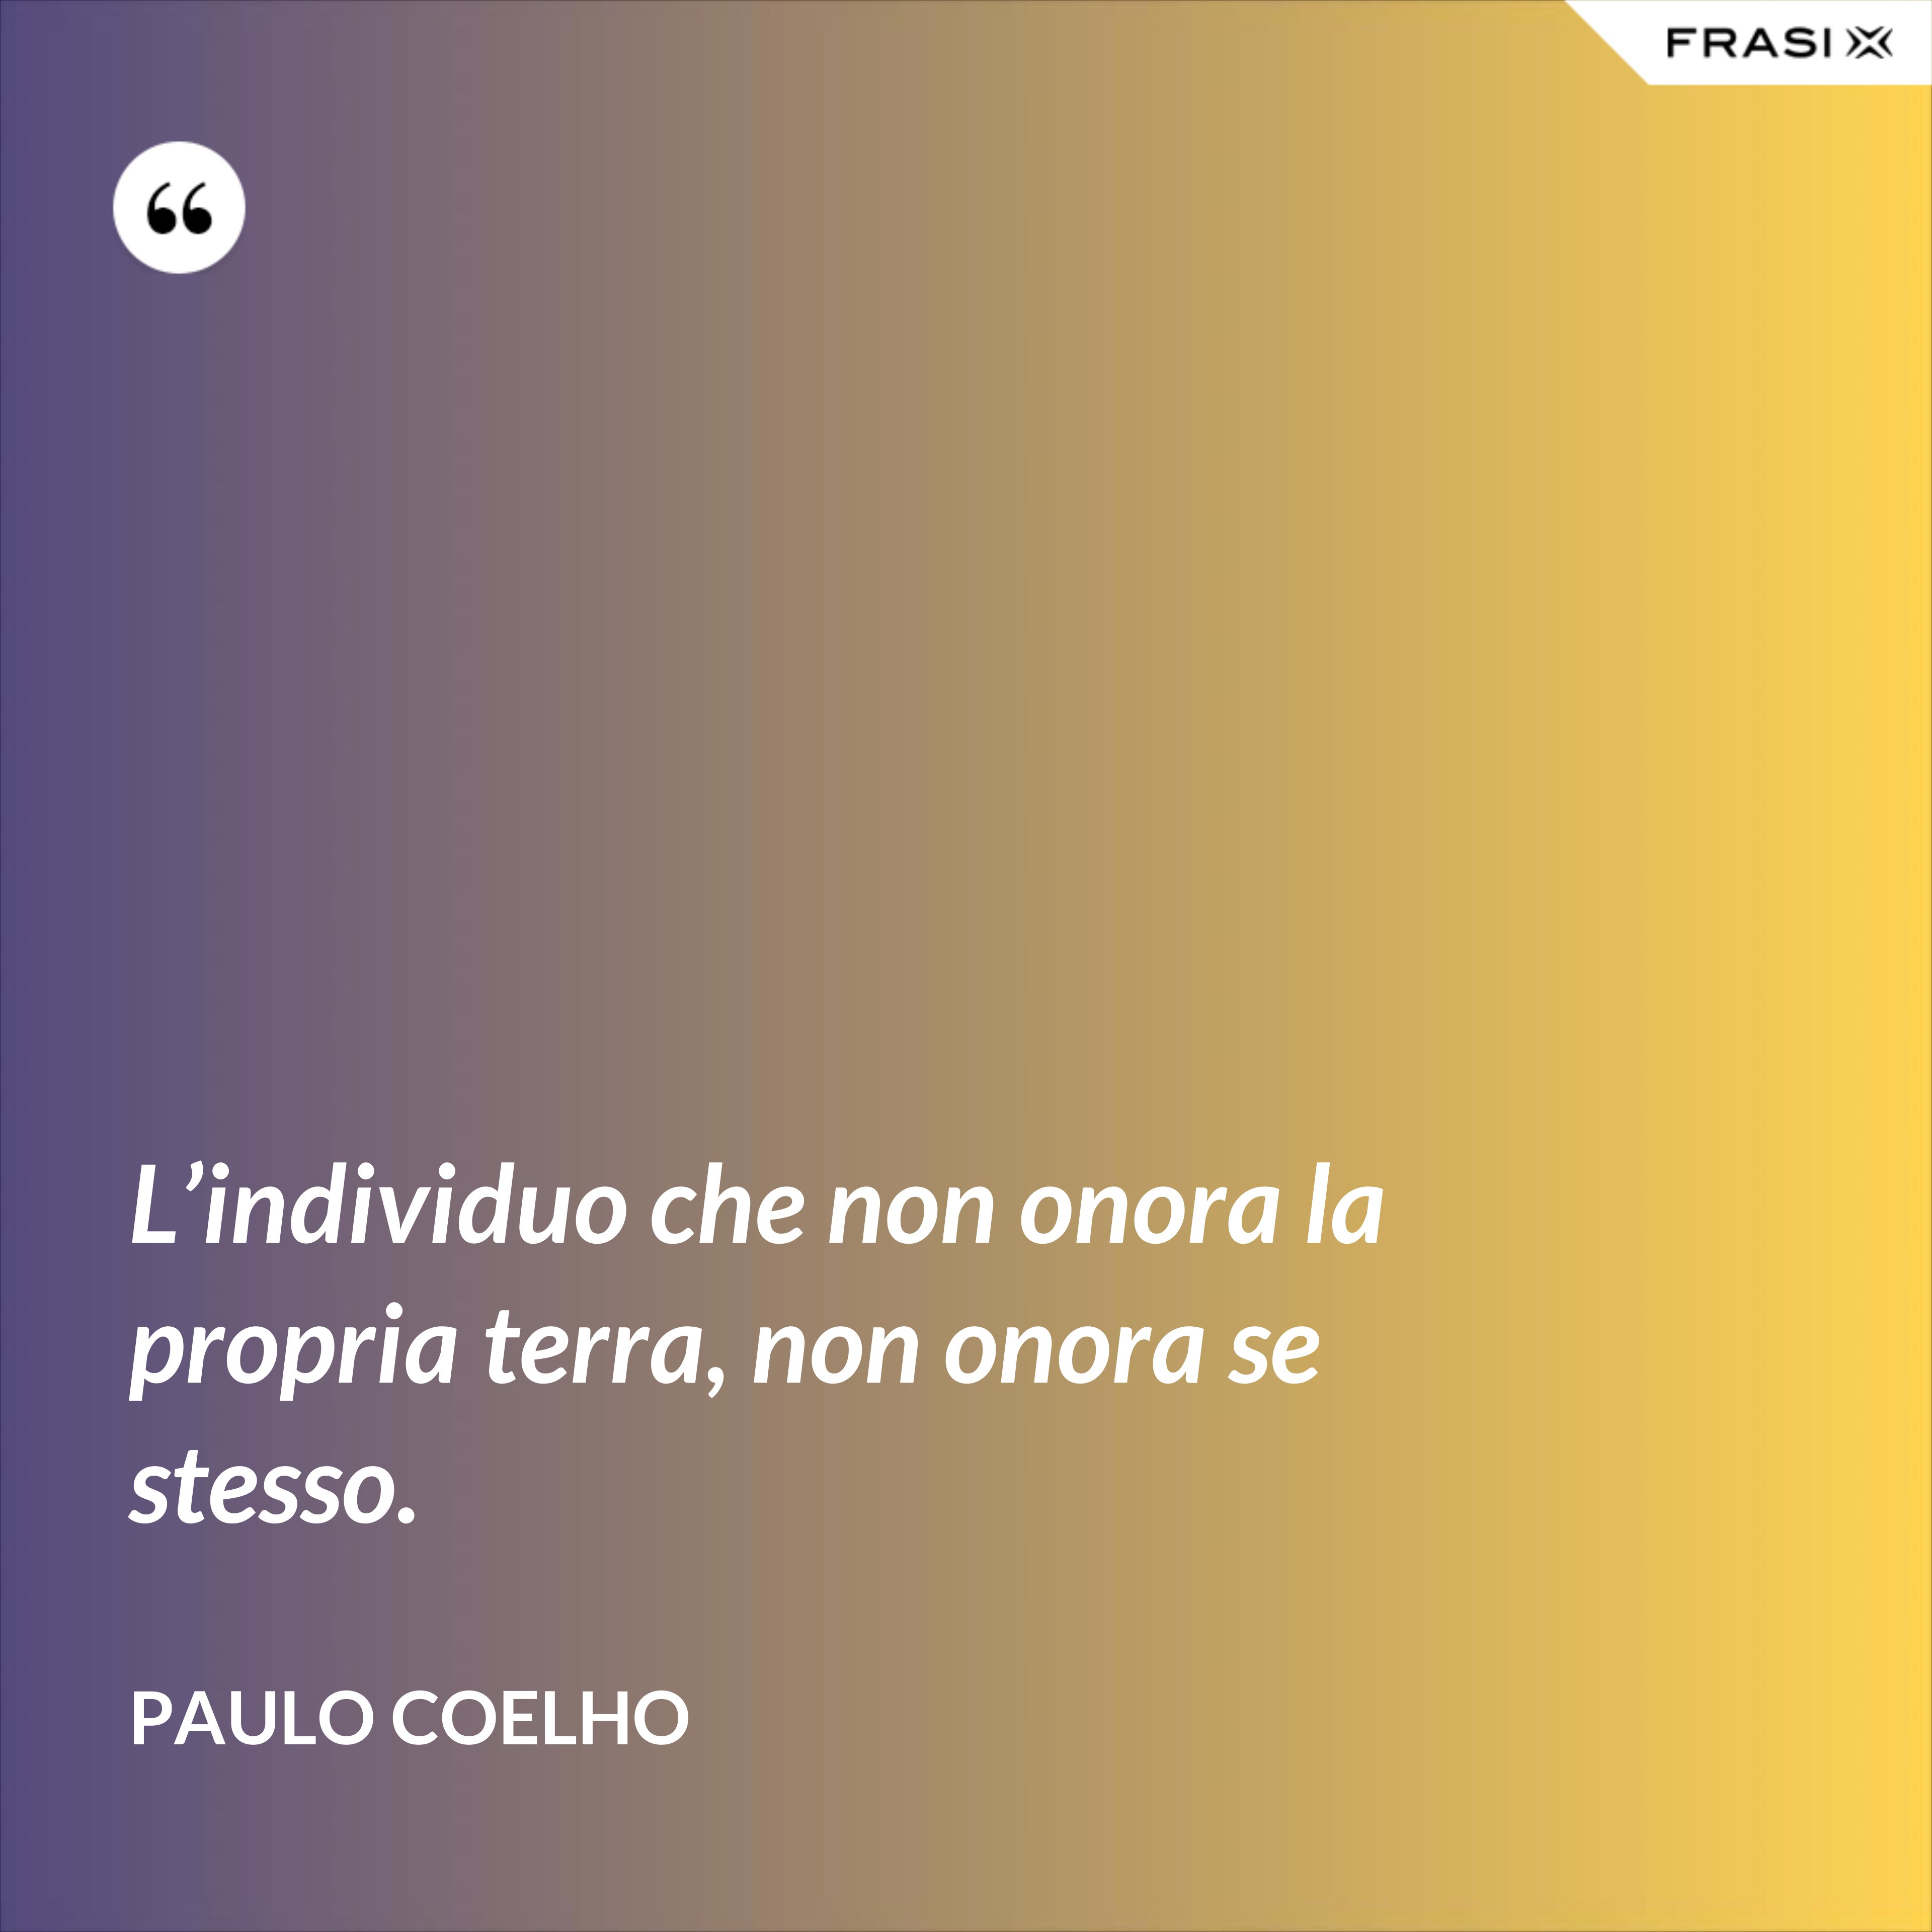 L’individuo che non onora la propria terra, non onora se stesso. - Paulo Coelho